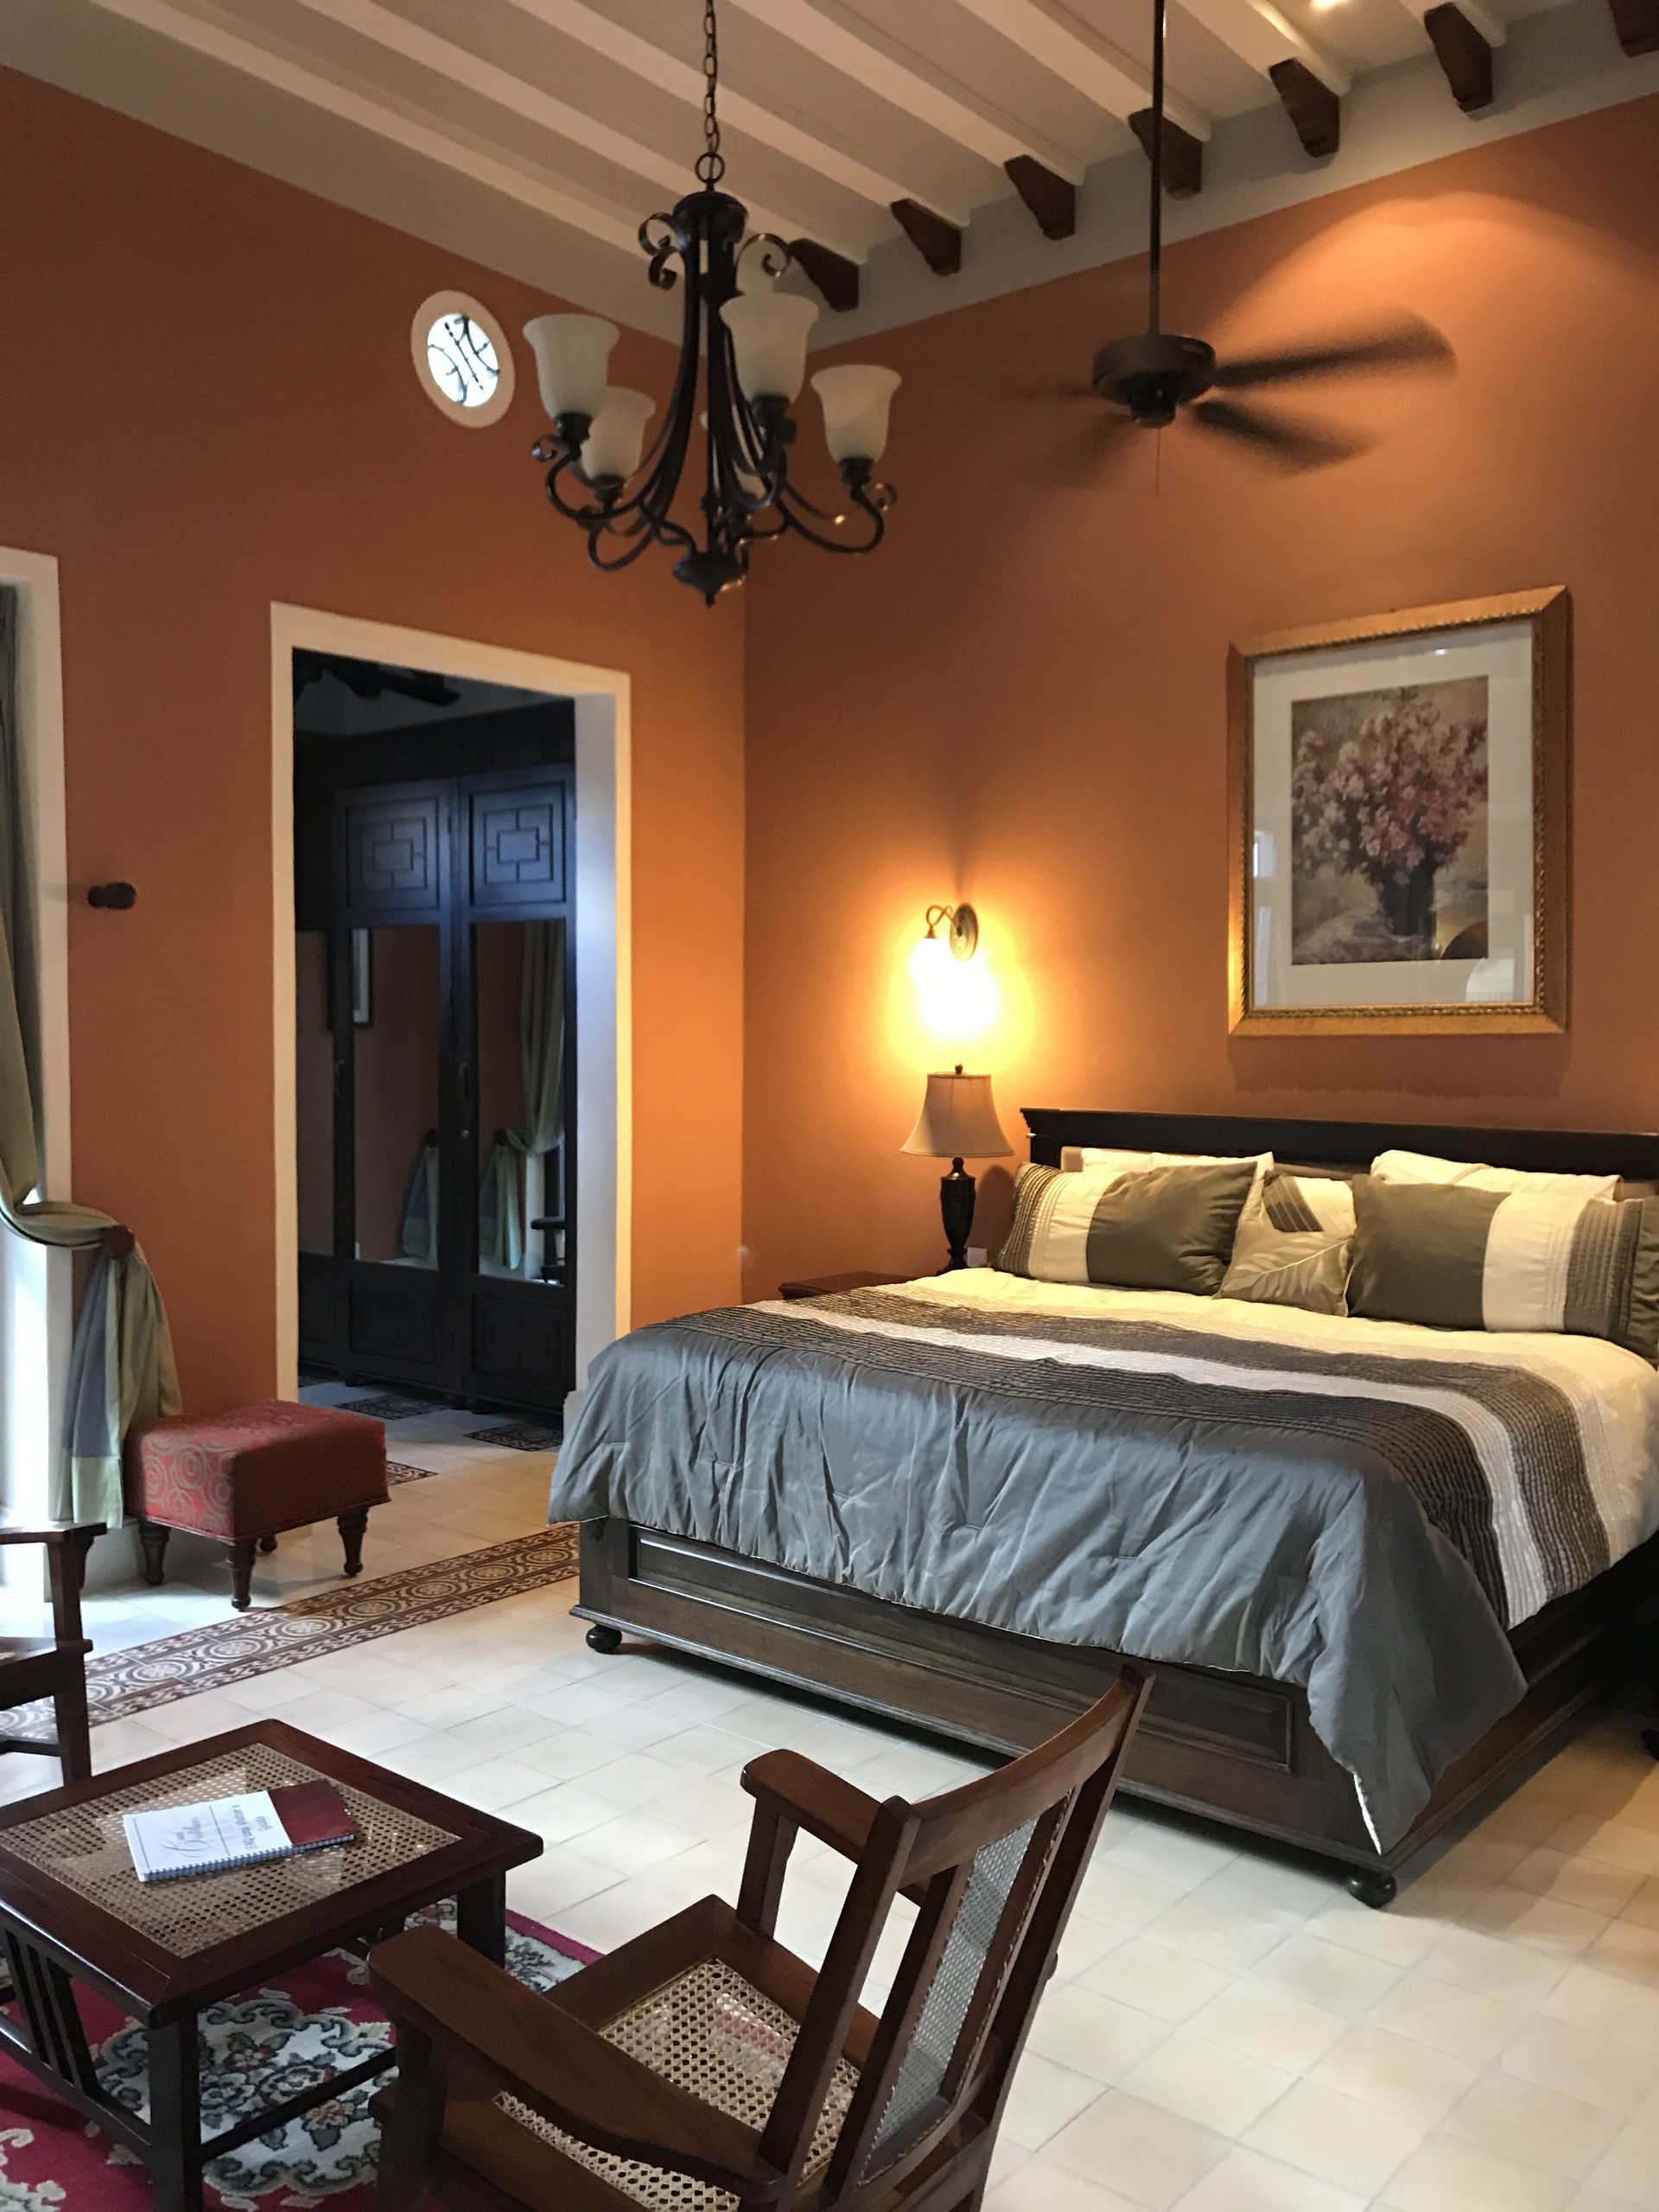 Hoteleros exigen regular las casas rentadas a través del Airbnb en la CDMX